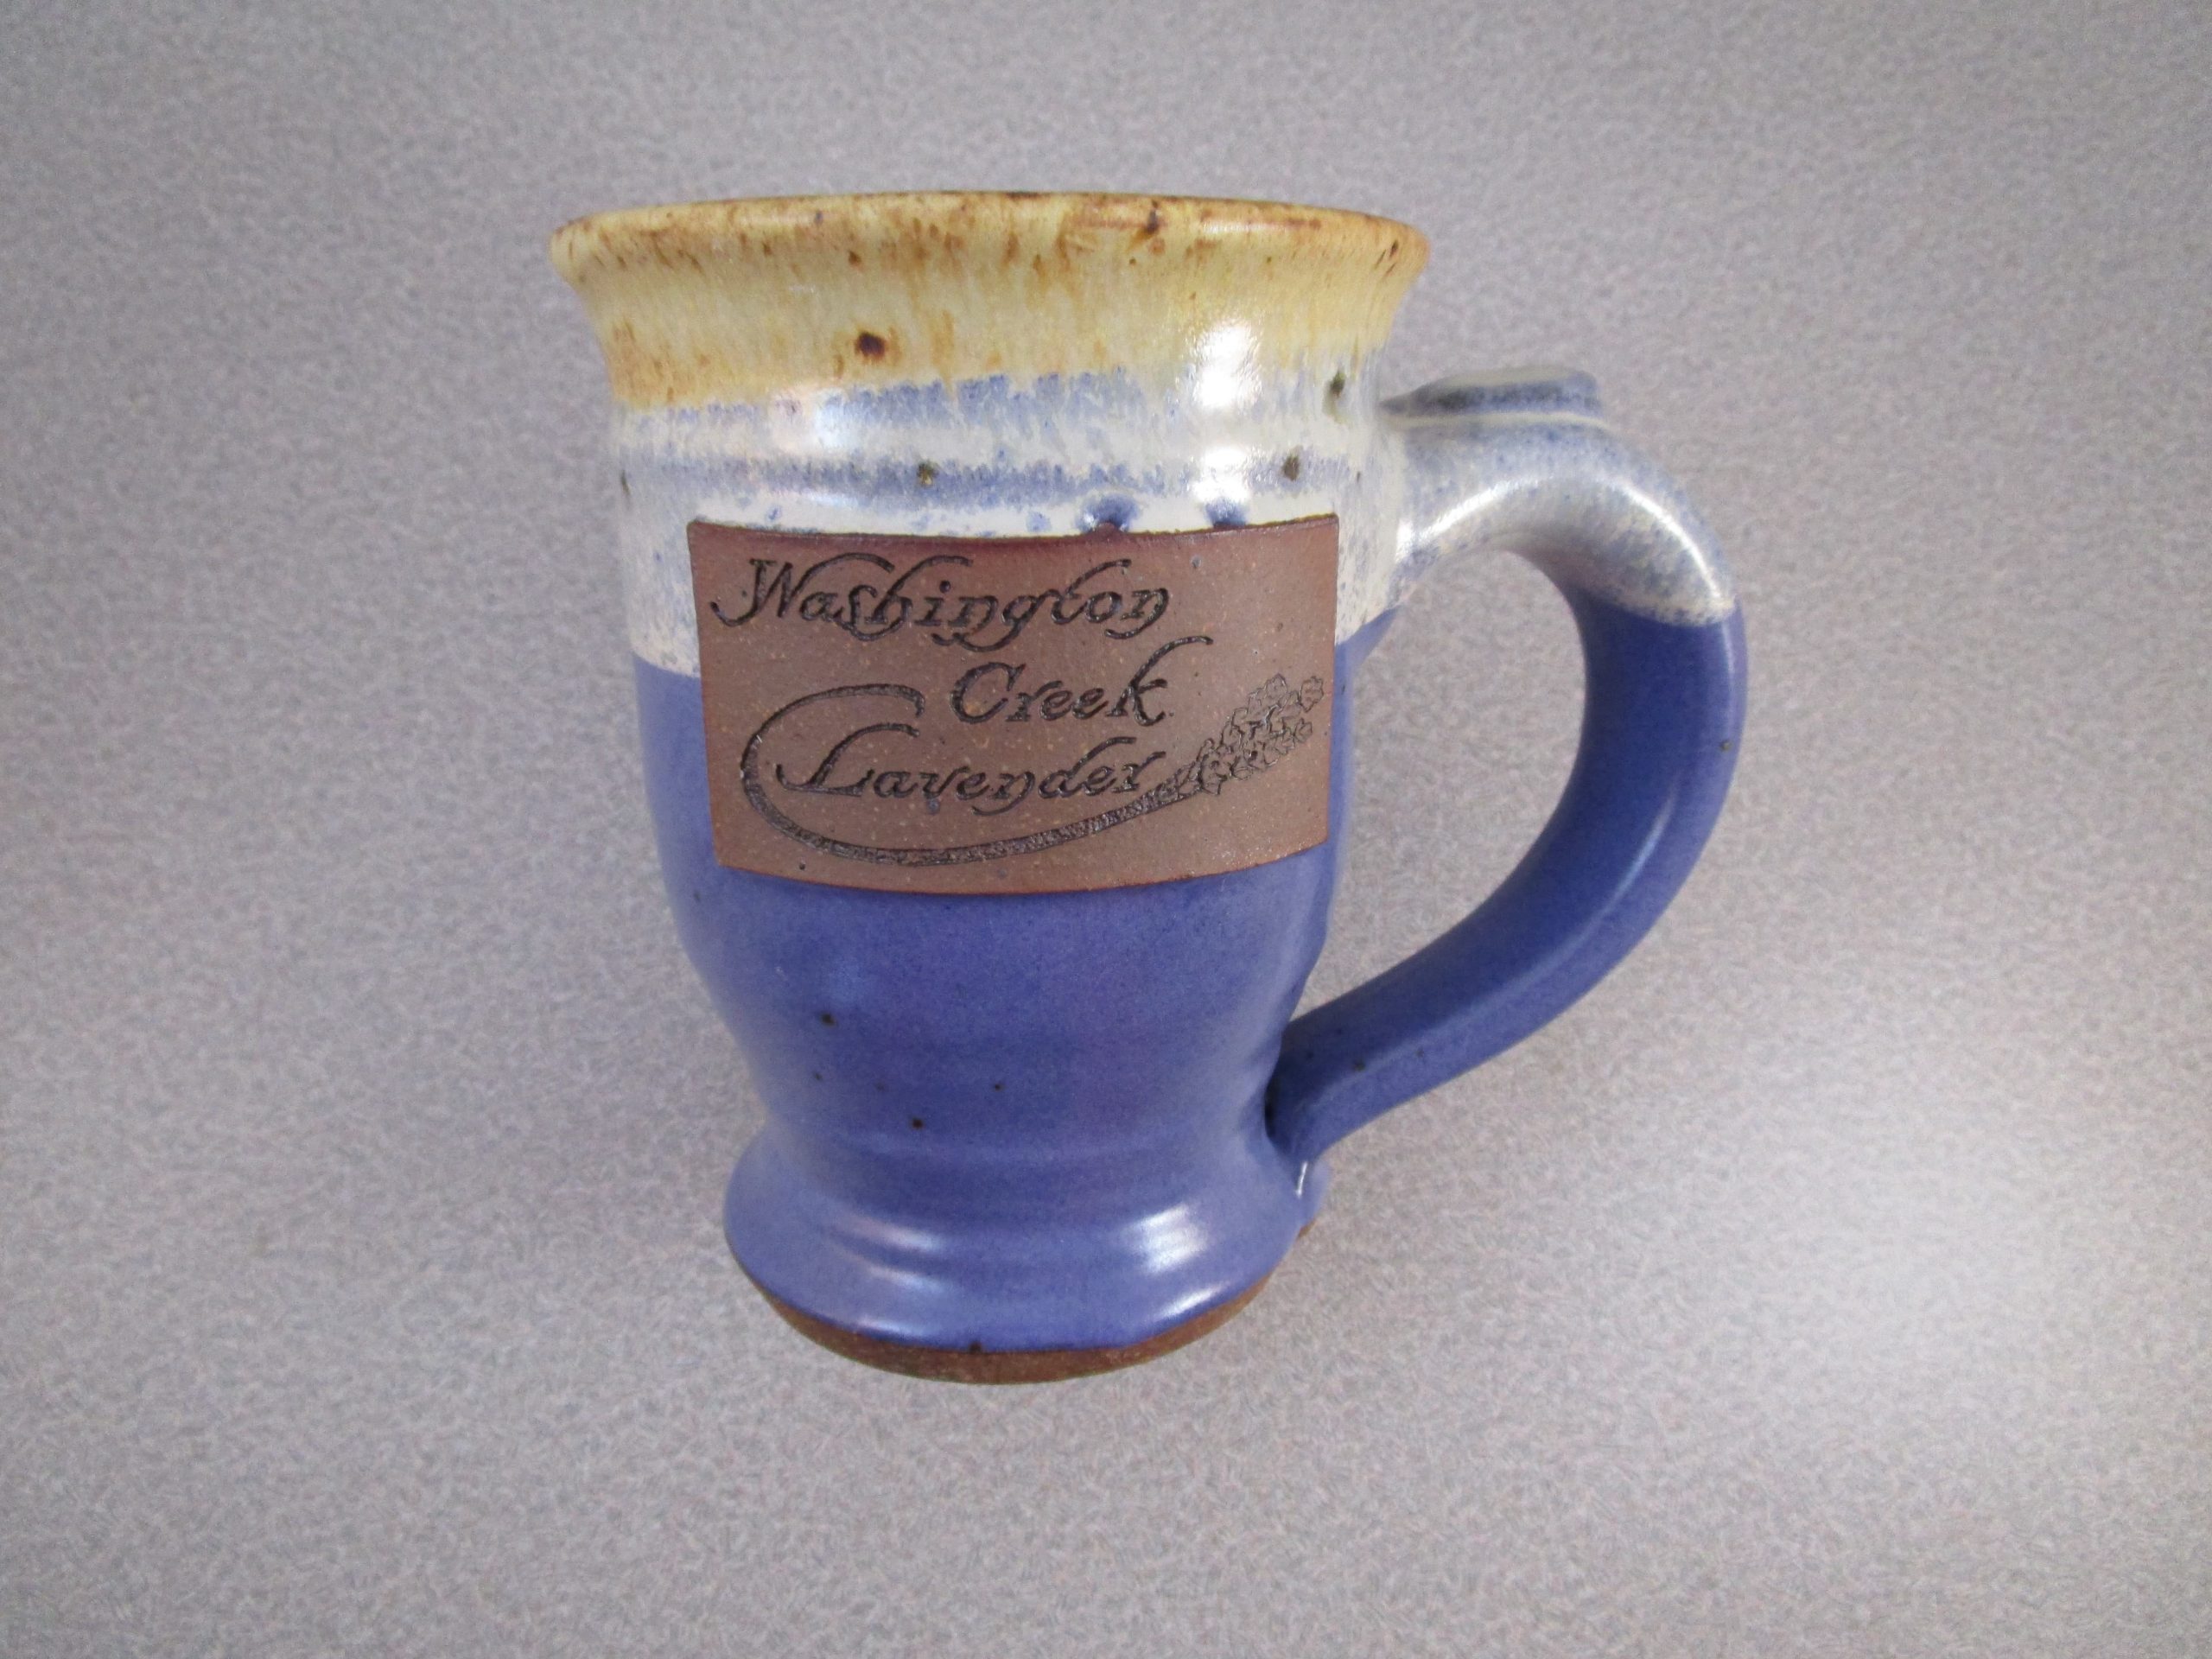 Washington Creek Lavender two-tone mug